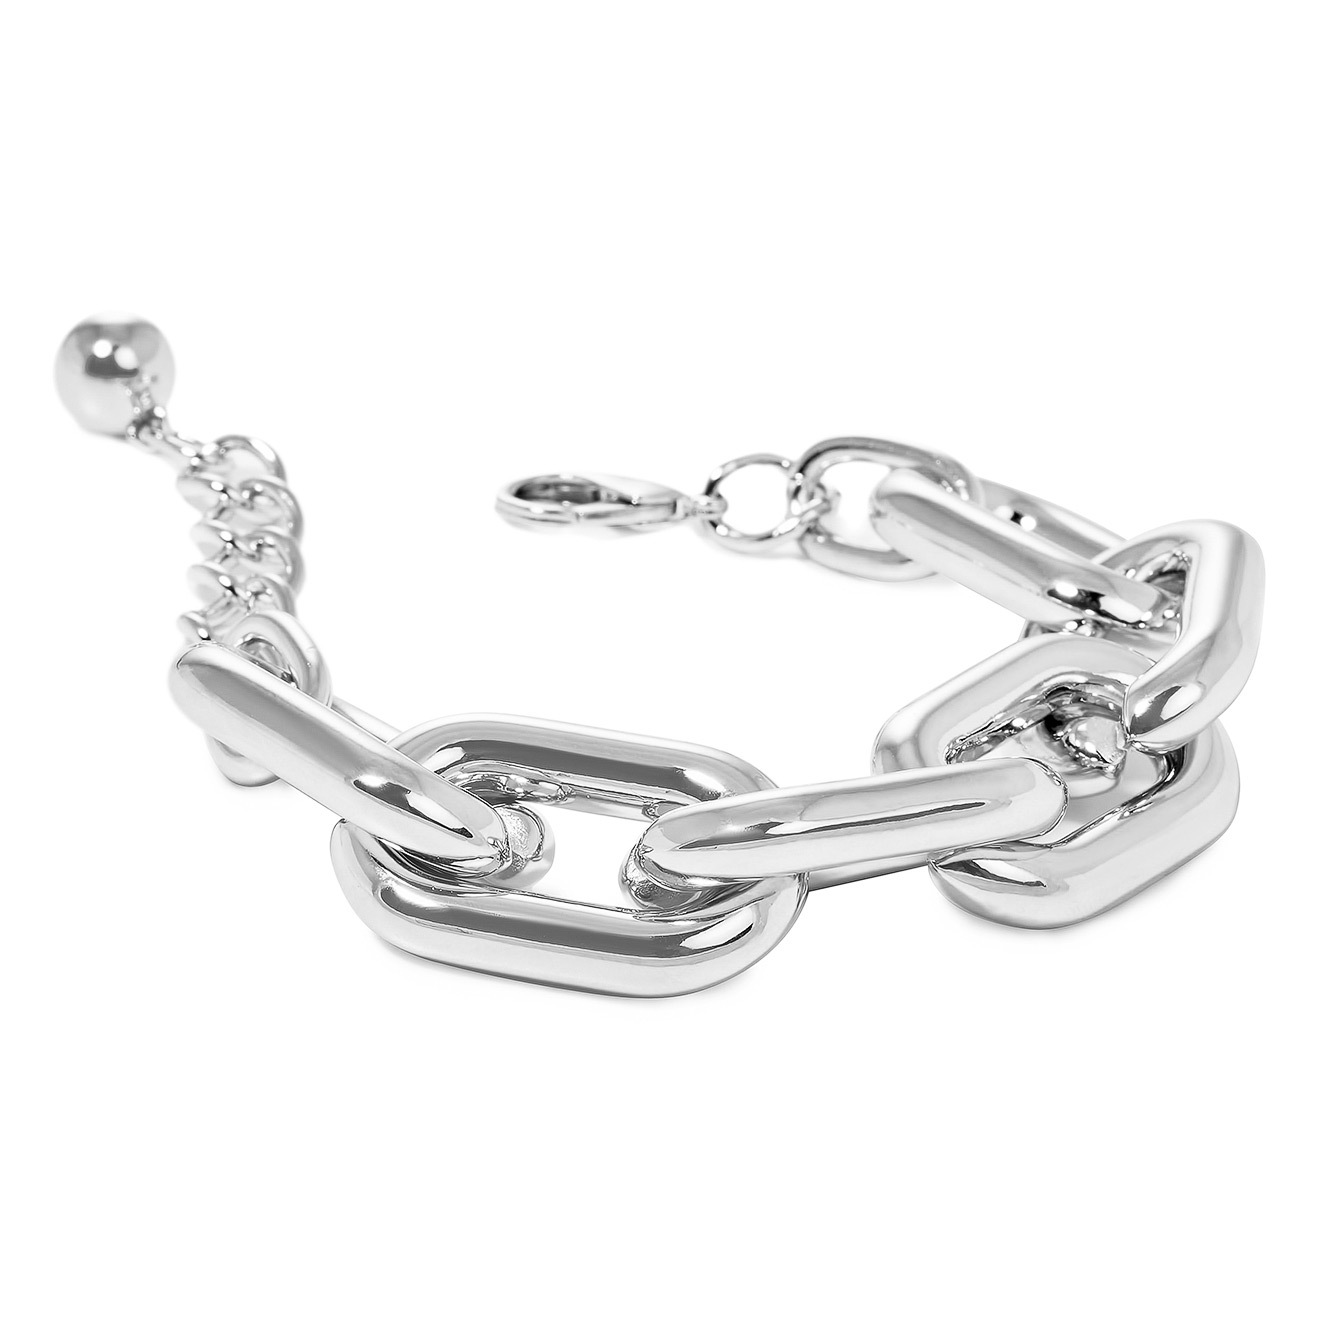 Aqua Серебристый браслет-цепь из крупных звеньев lisa smith биколорный браслет цепь из крупных звеньев